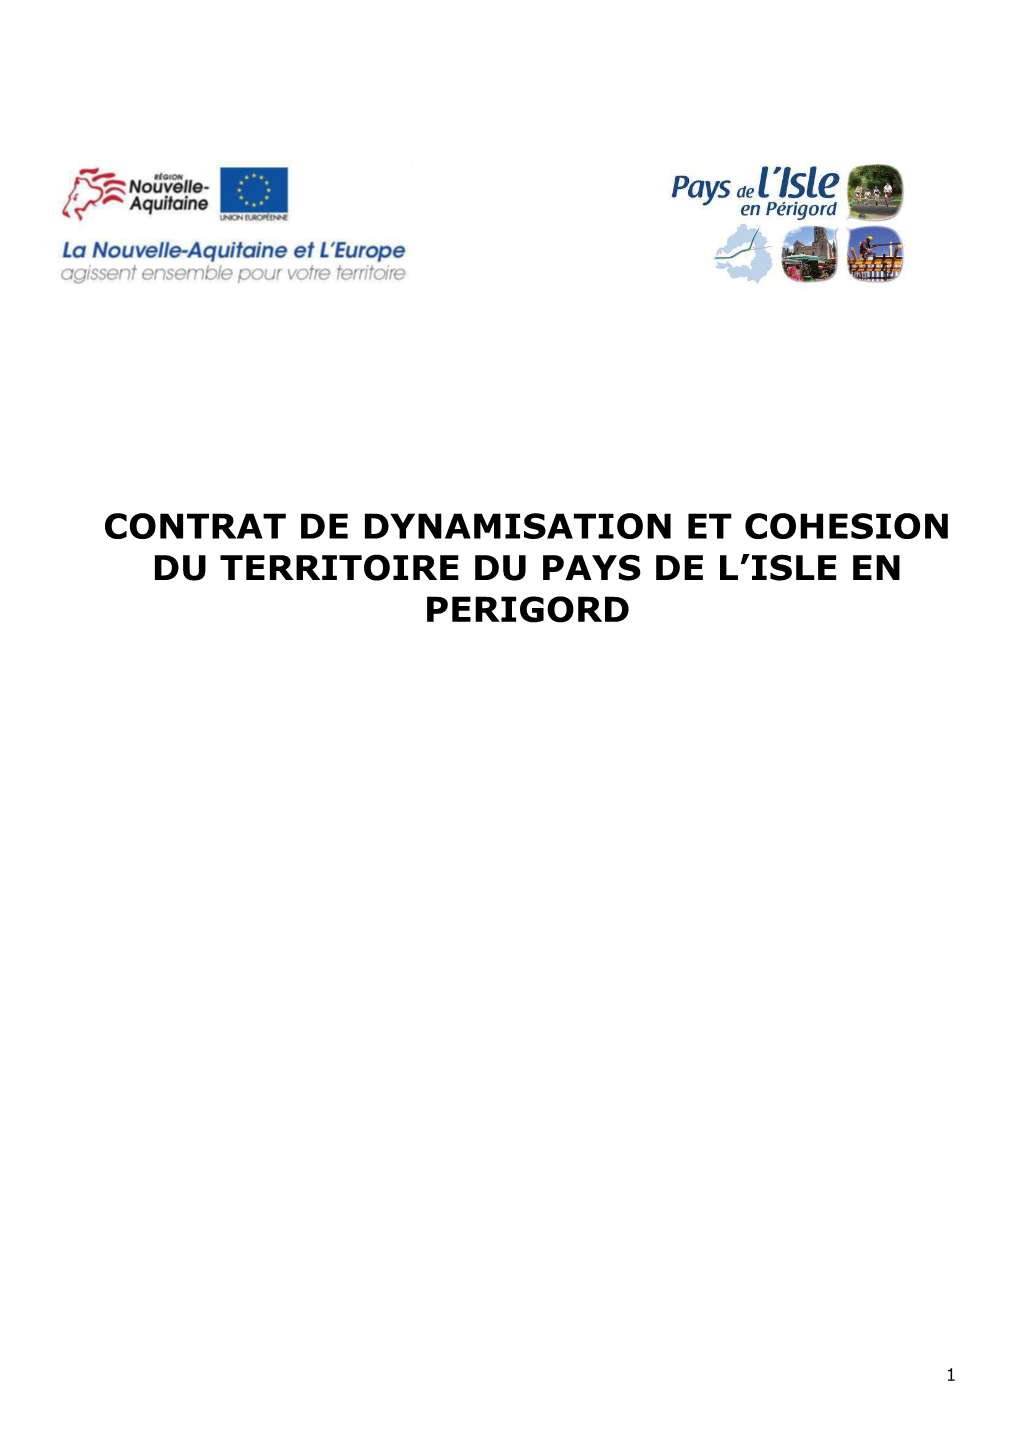 Contrat De Dynamisation Et Cohesion Du Territoire Du Pays De L'isle En